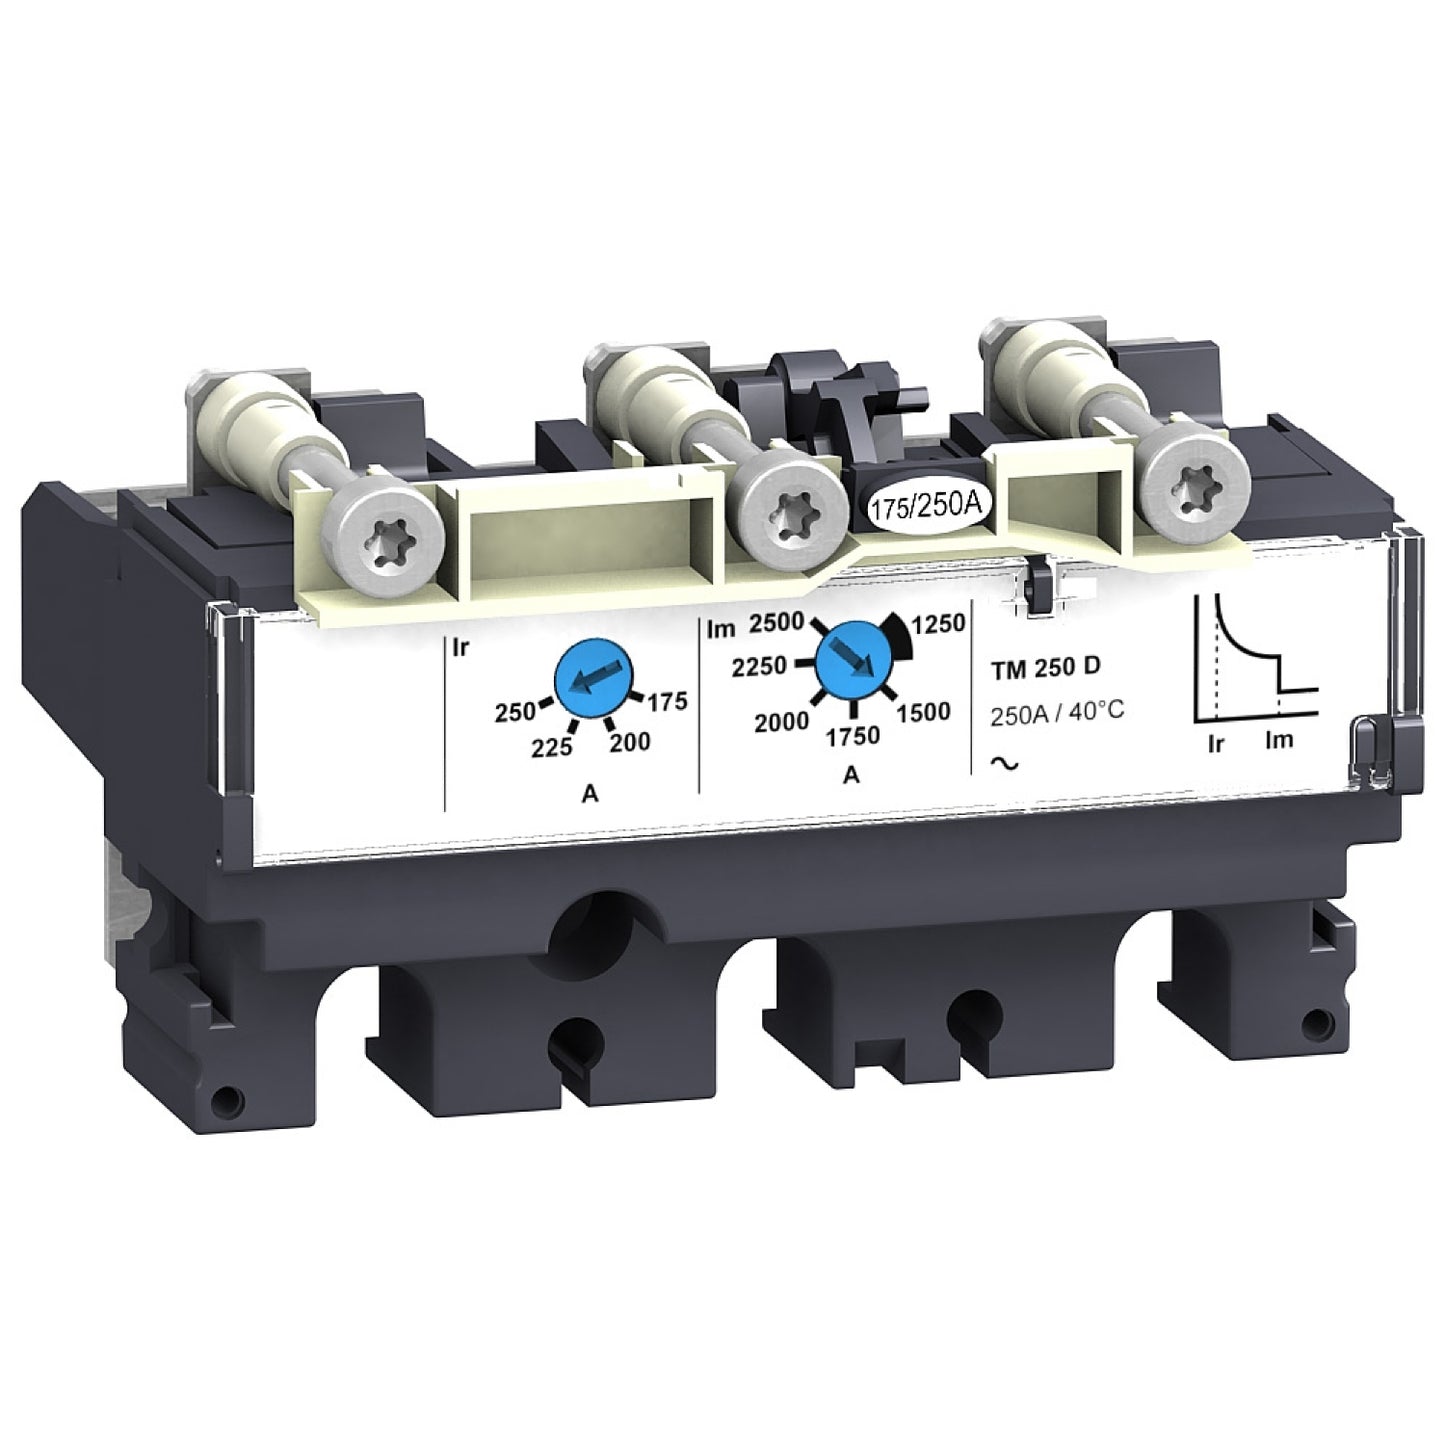 LV429030 Trip unit TM100D for NSX100/160/250 circuit breakers